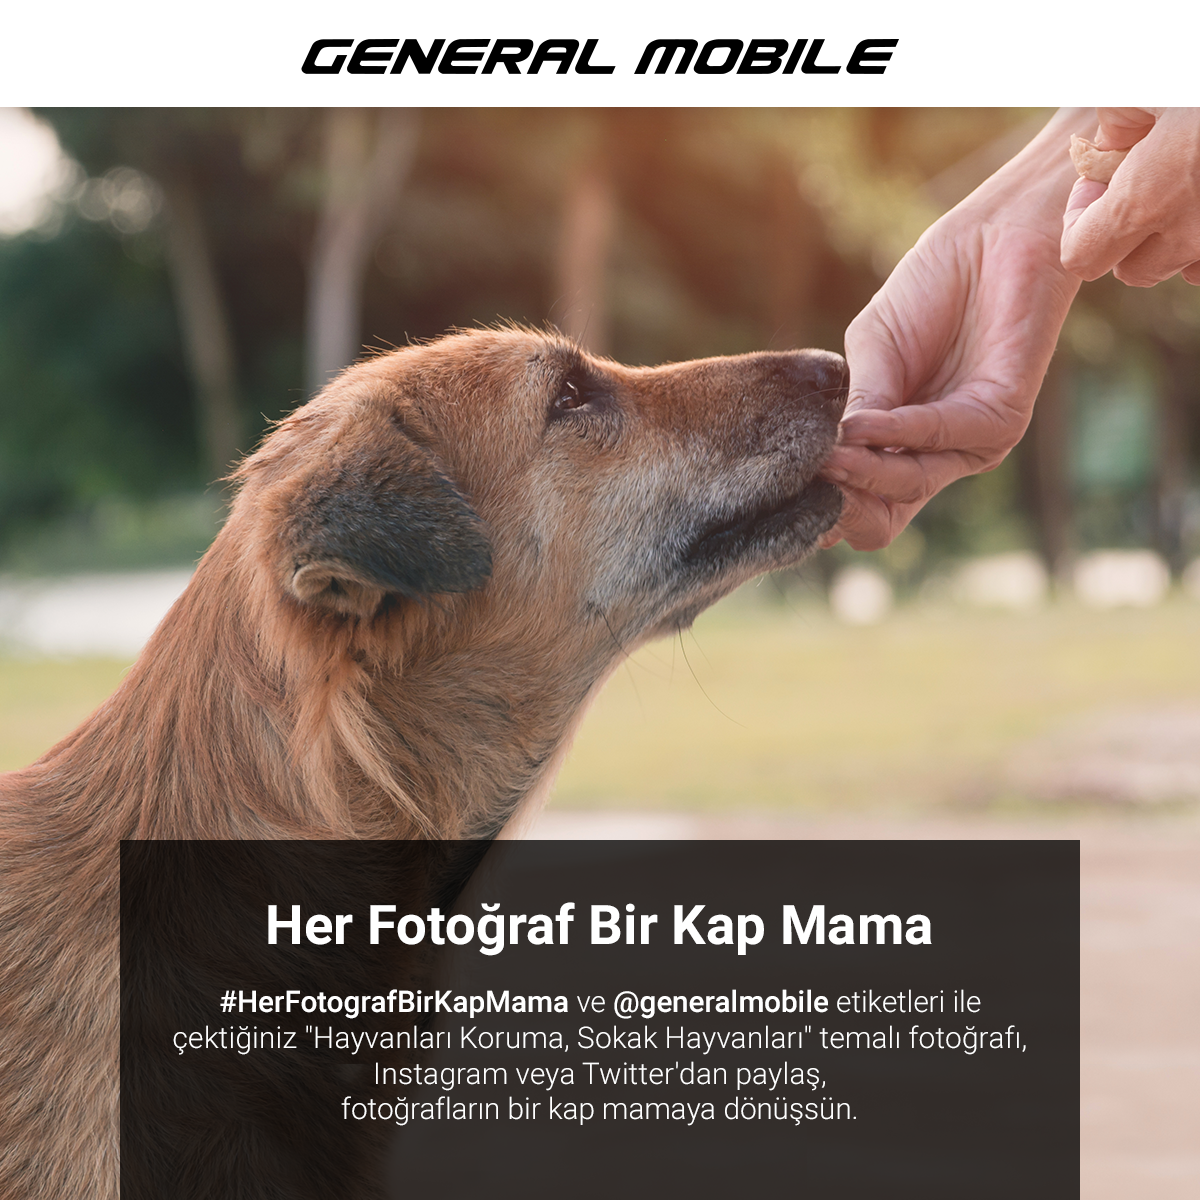 General Mobile her fotoğrafı bir kap mamaya dönüştürüyor-campaigntr